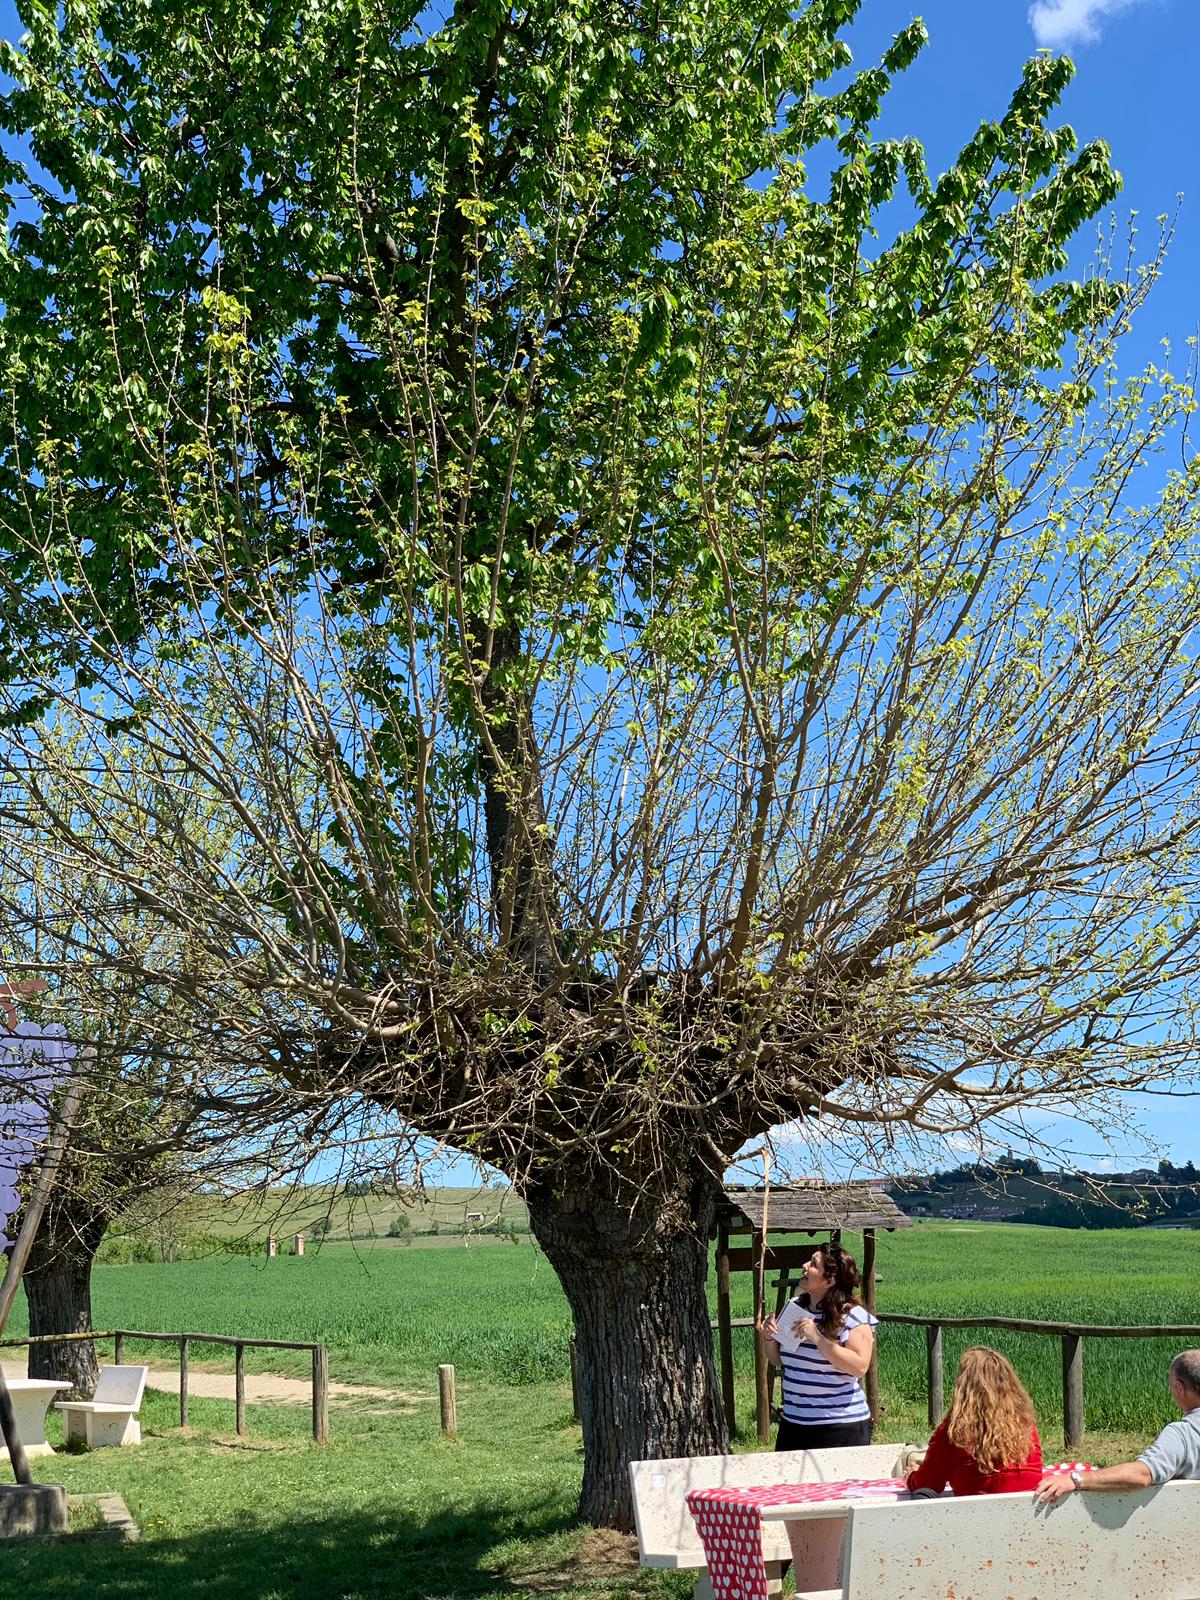 In provincia di Asti, nella strada tra Grana e Catorzo, terra della Malvasia, c'è un paesaggio unico. Un albero su cui sorge un altro albero: il Bialbero